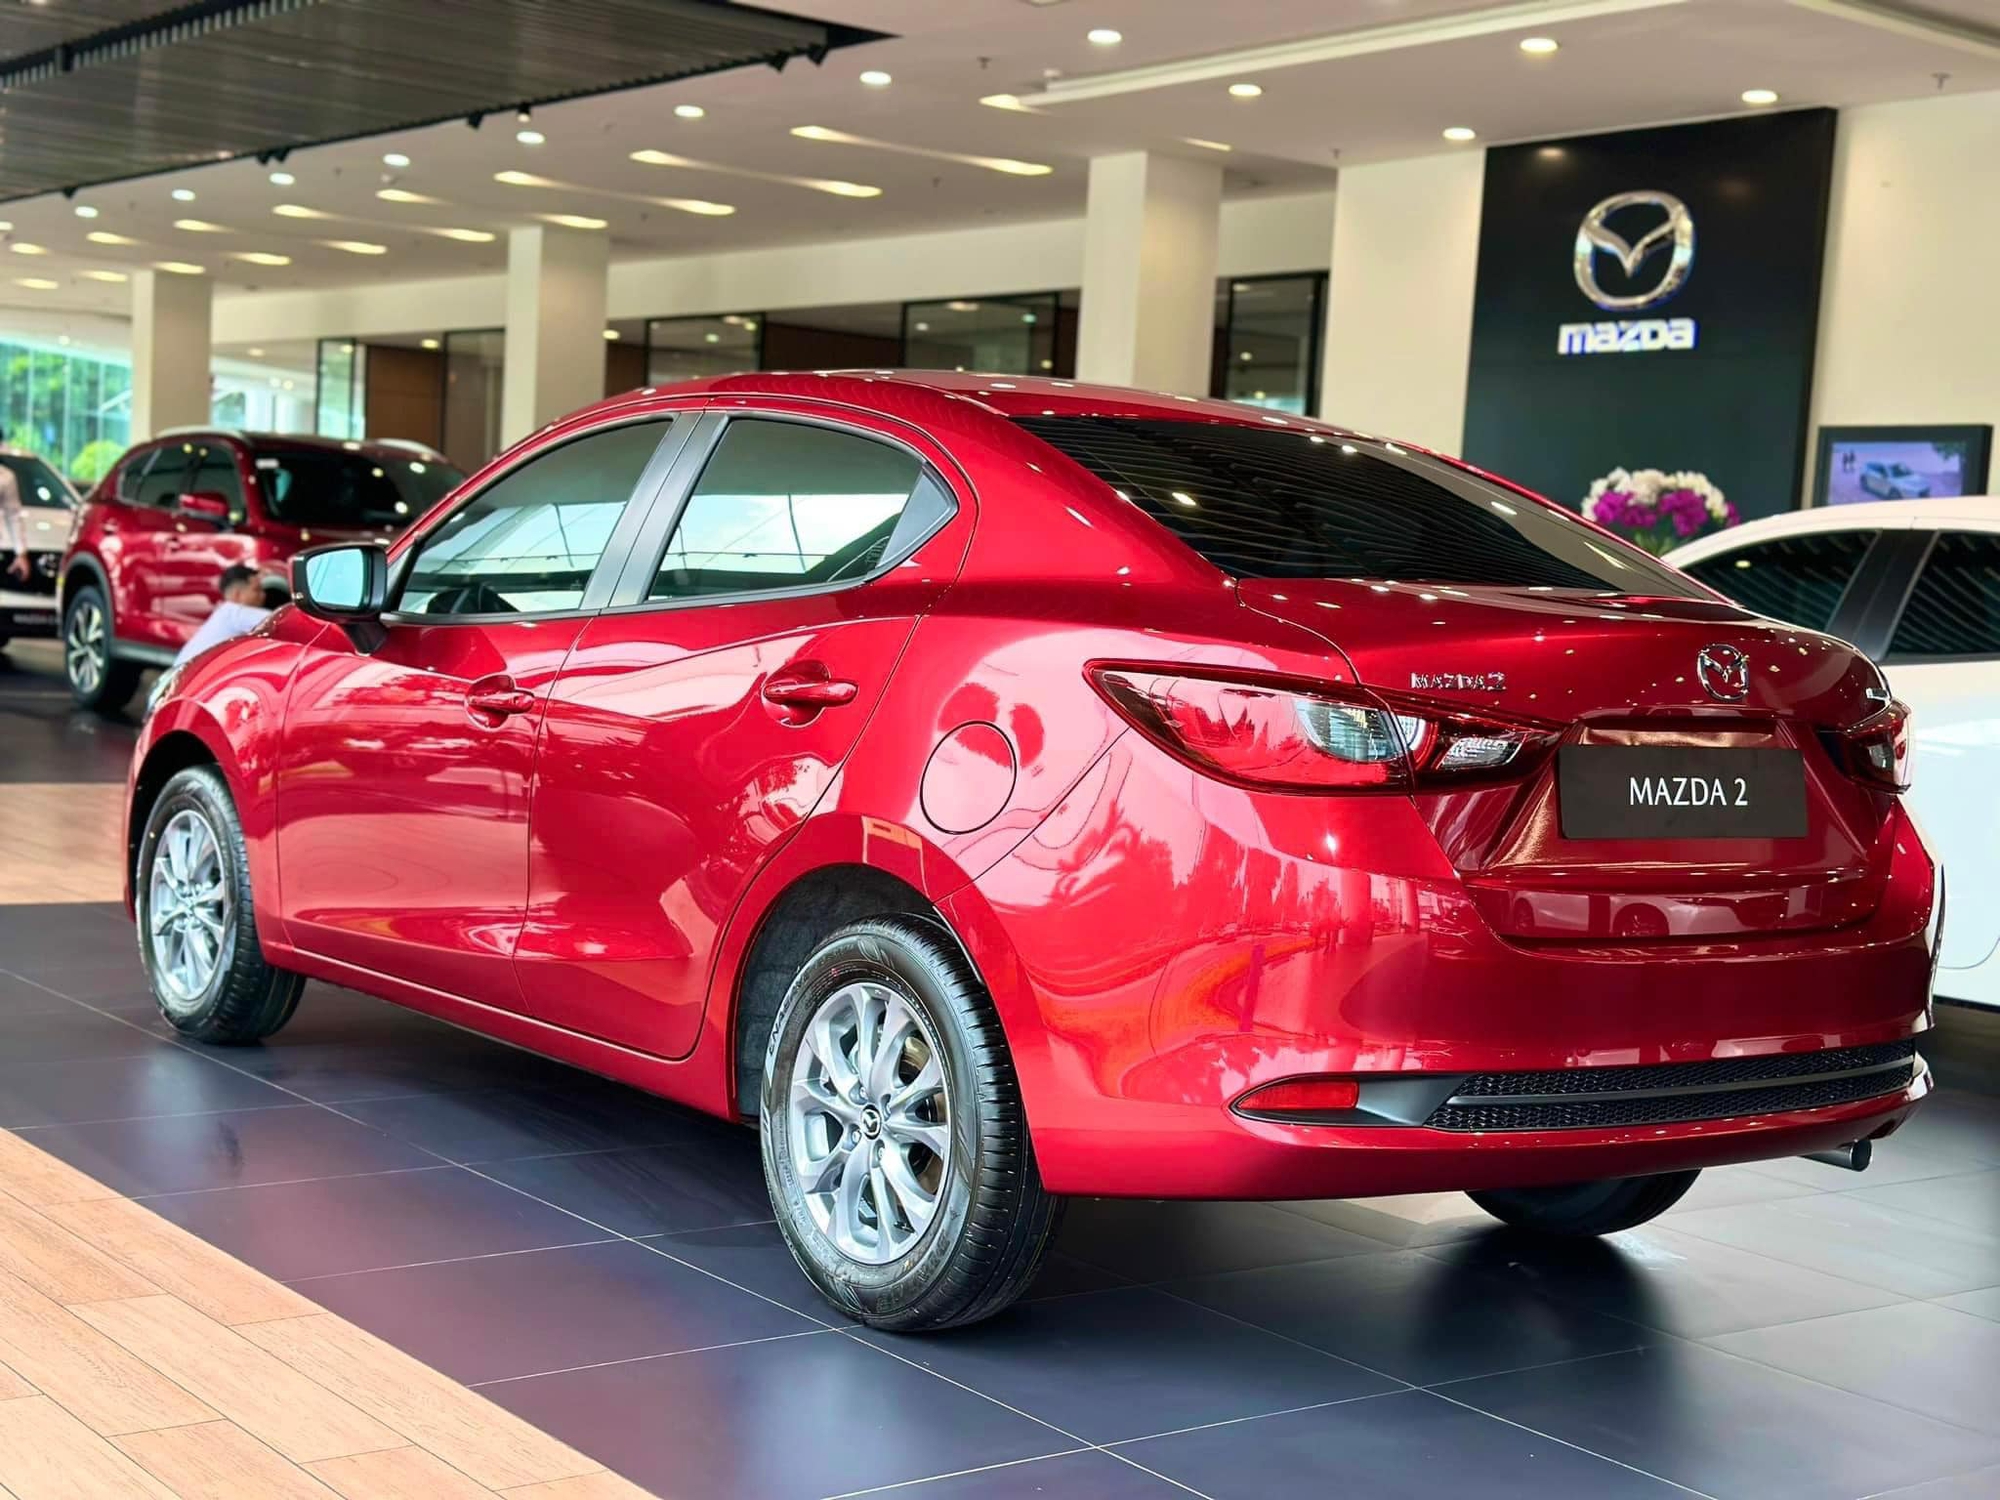 Loạt xe Mazda nhập tăng giá: CX-3 'phá' mức giá thấp kỷ lục từng xác lập, Mazda2 vẫn rẻ nhất phân khúc- Ảnh 2.